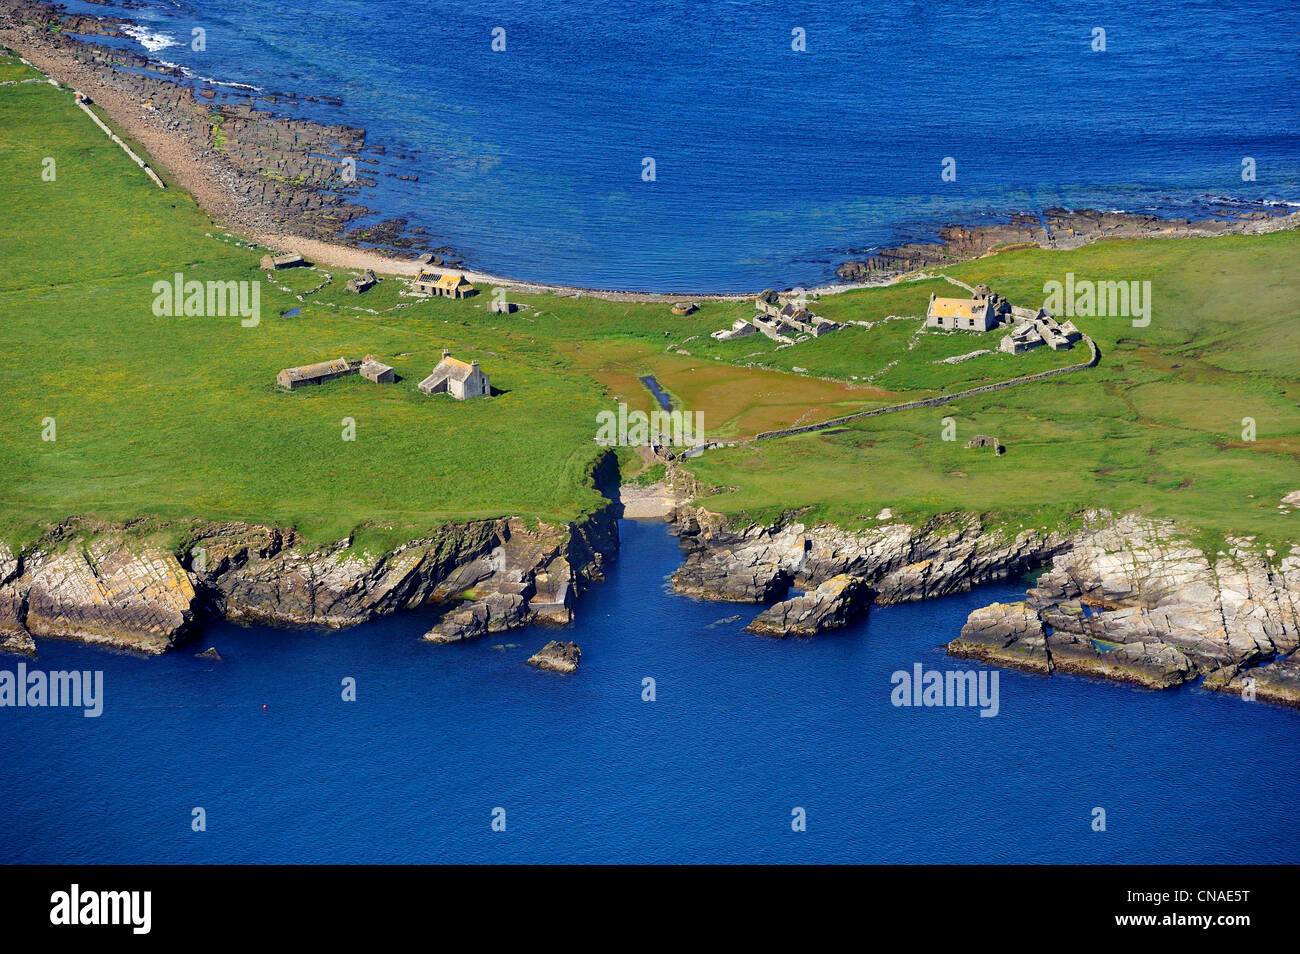 Regno Unito, Scozia, isole Orcadi, ruderi di ex case sulla piccola isola disabitata di Swona (vista aerea) Foto Stock